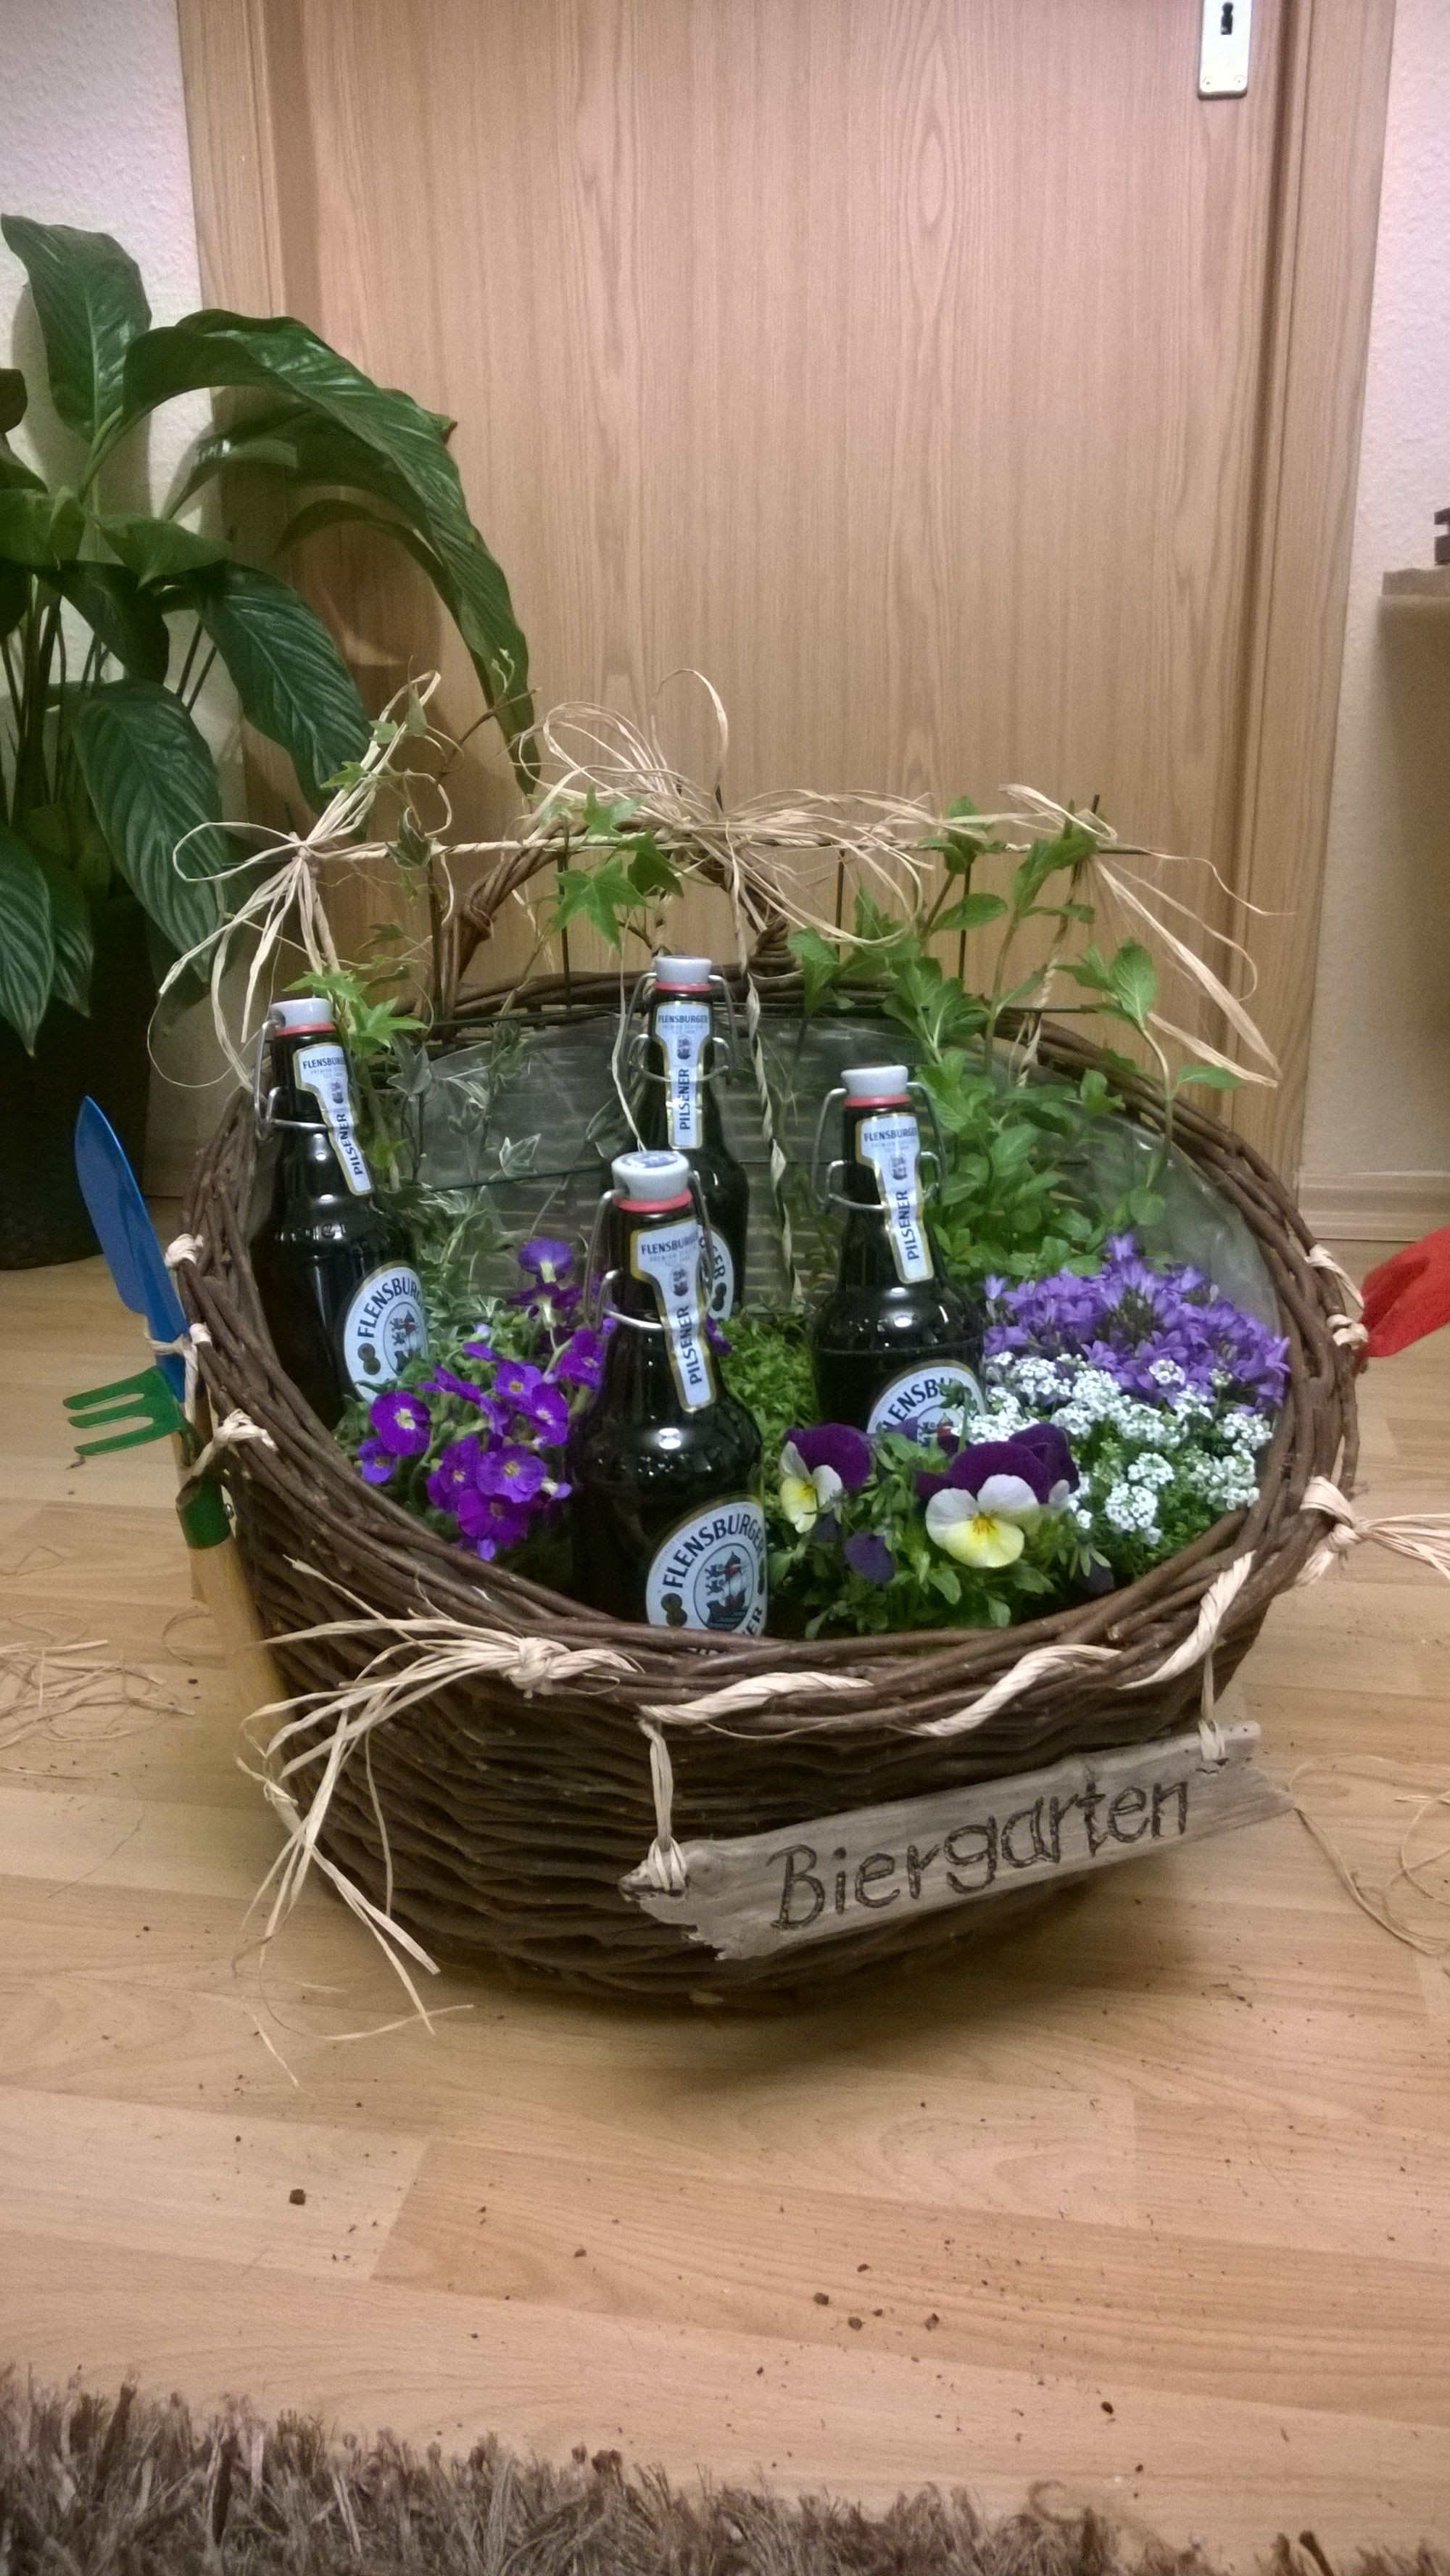 Lustige Geschenke Für Männer Zum Selbermachen
 Biergarten Blumen Geschenk Blumenkorb Flensburger